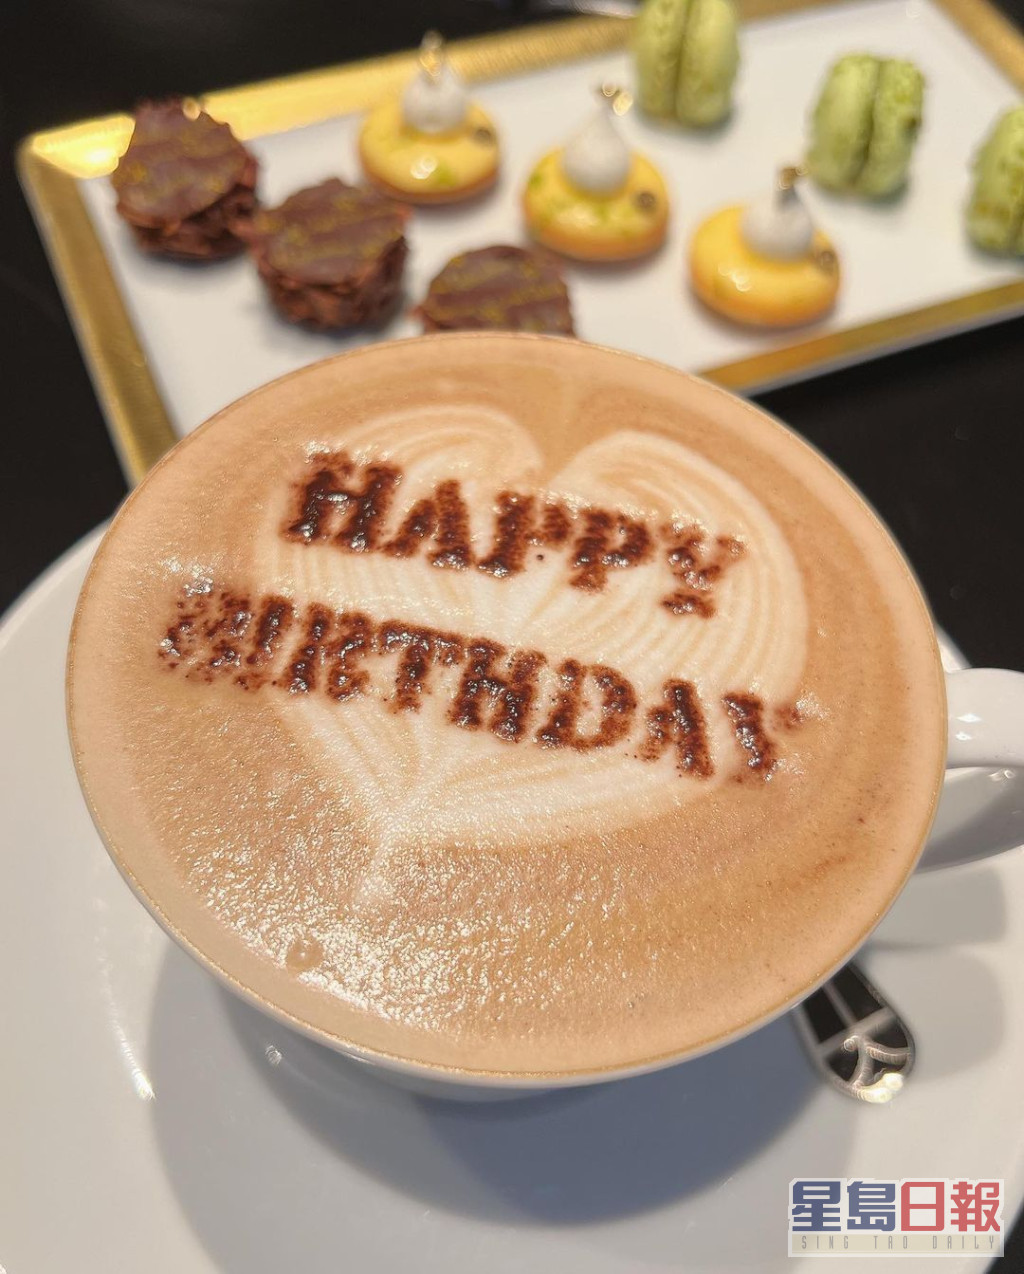 咖啡上還撒上「Happy Birthday」字樣的朱古力粉。